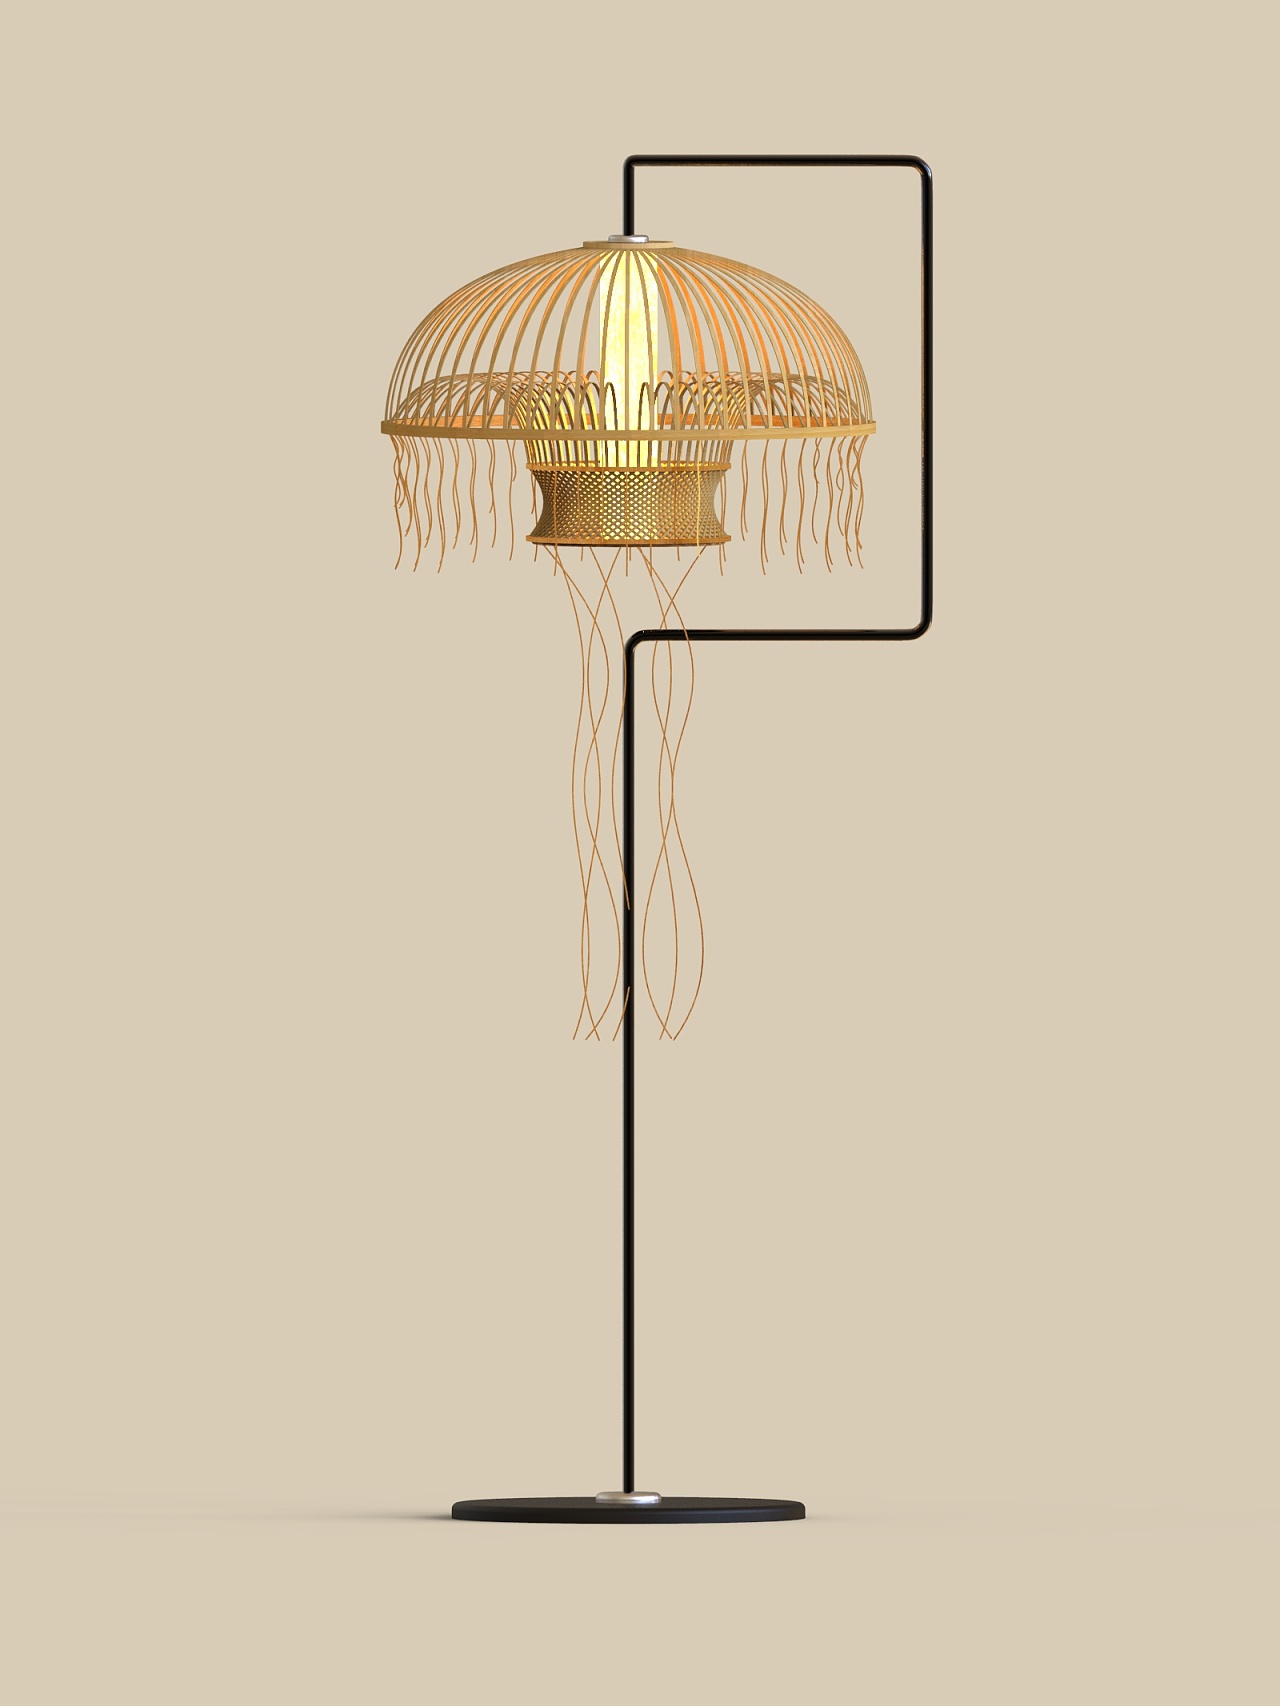 竹制灯具设计图片